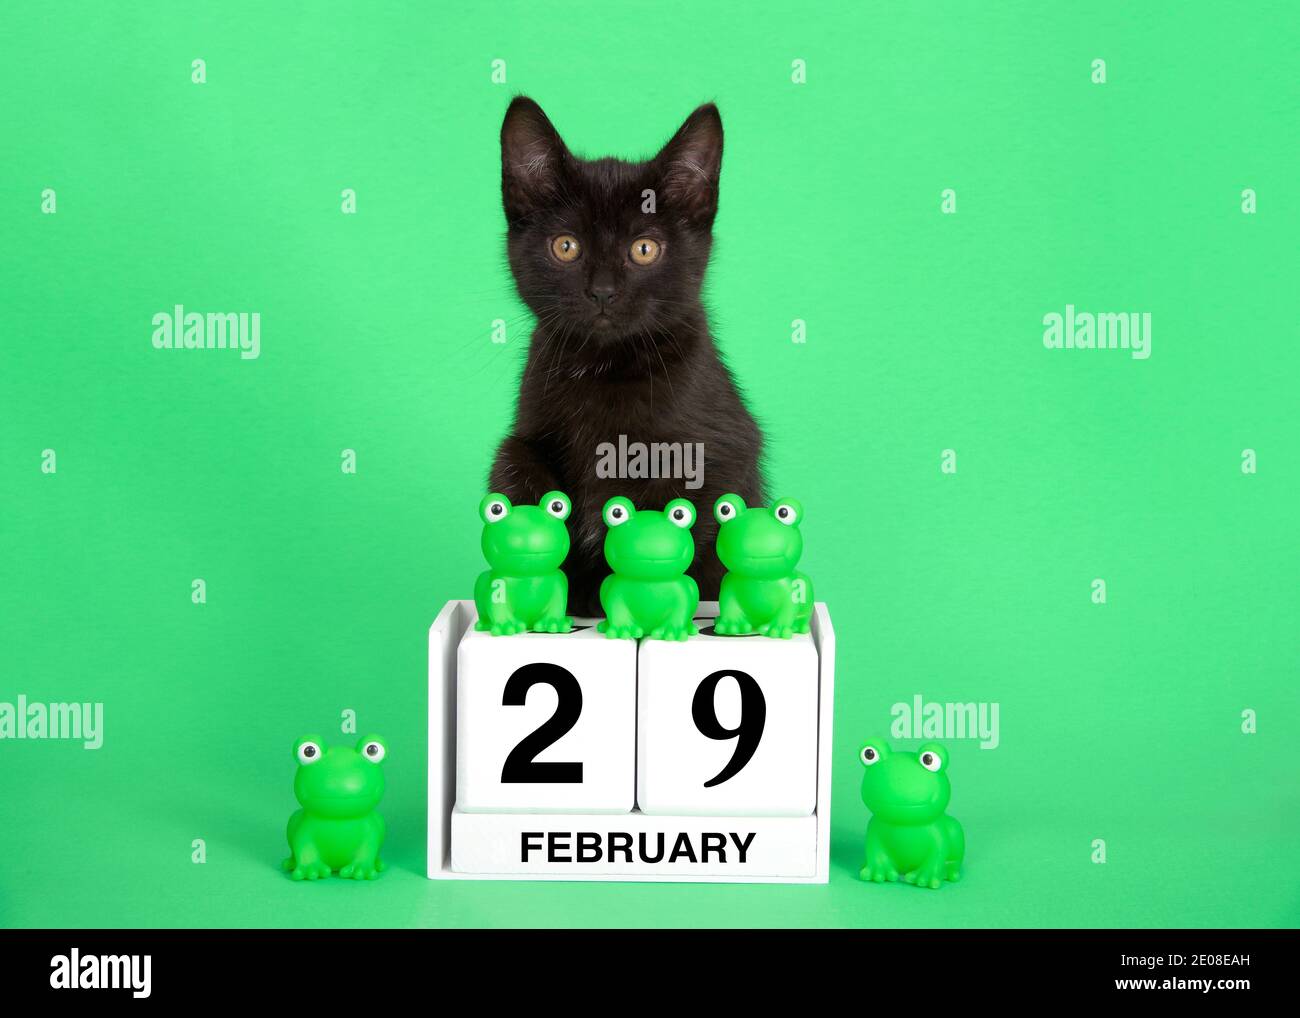 Adorable chaton noir perché sur des blocs de calendrier avec date de congé pour l'année de Leap, le 29 février. Grenouilles vertes sur le dessus et à côté de la date. Arrière-plan vert. Banque D'Images